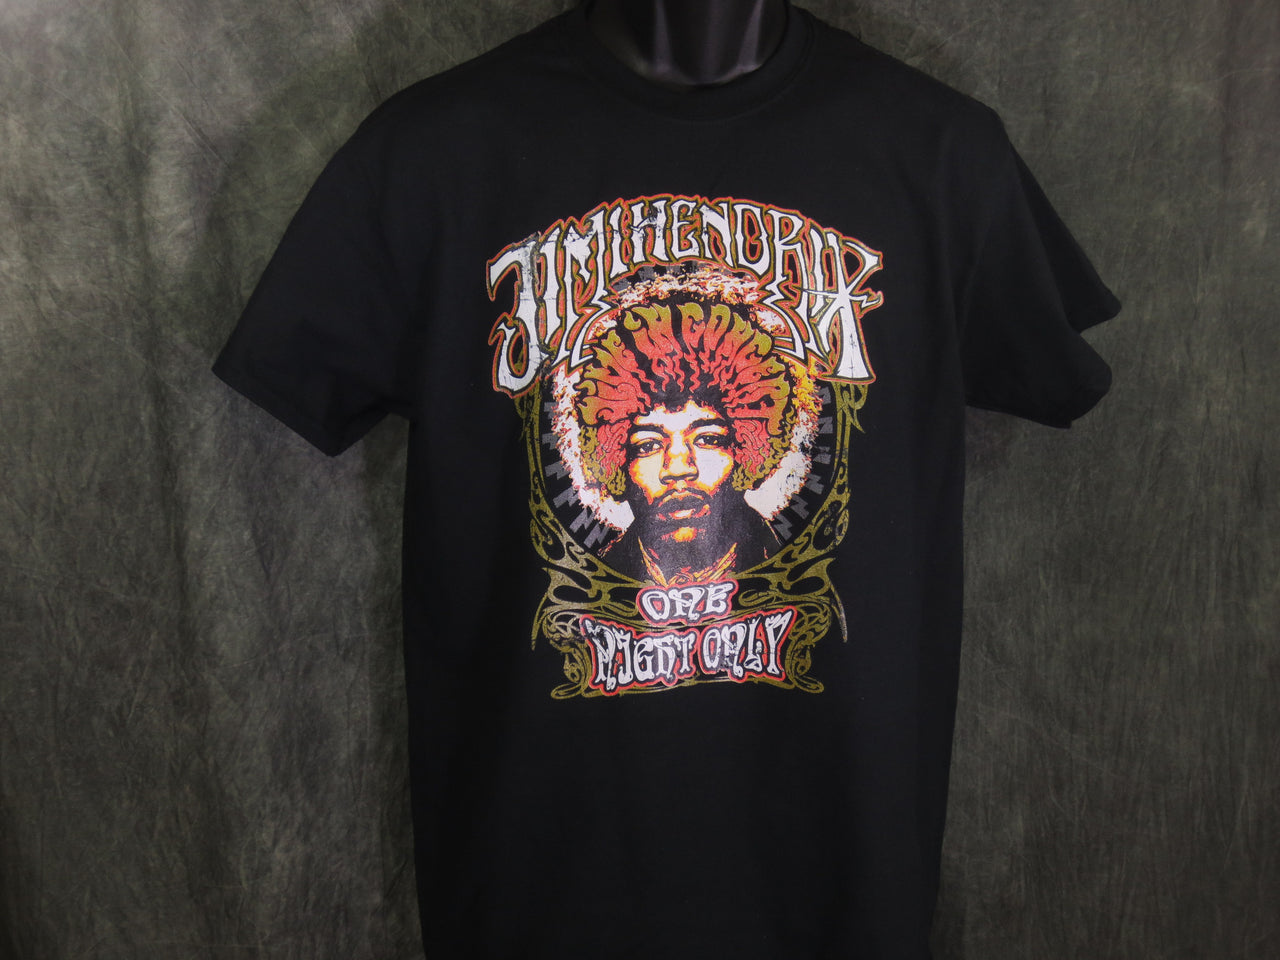 Jimi Hendrix One Night Only tshirt - TshirtNow.net - 3